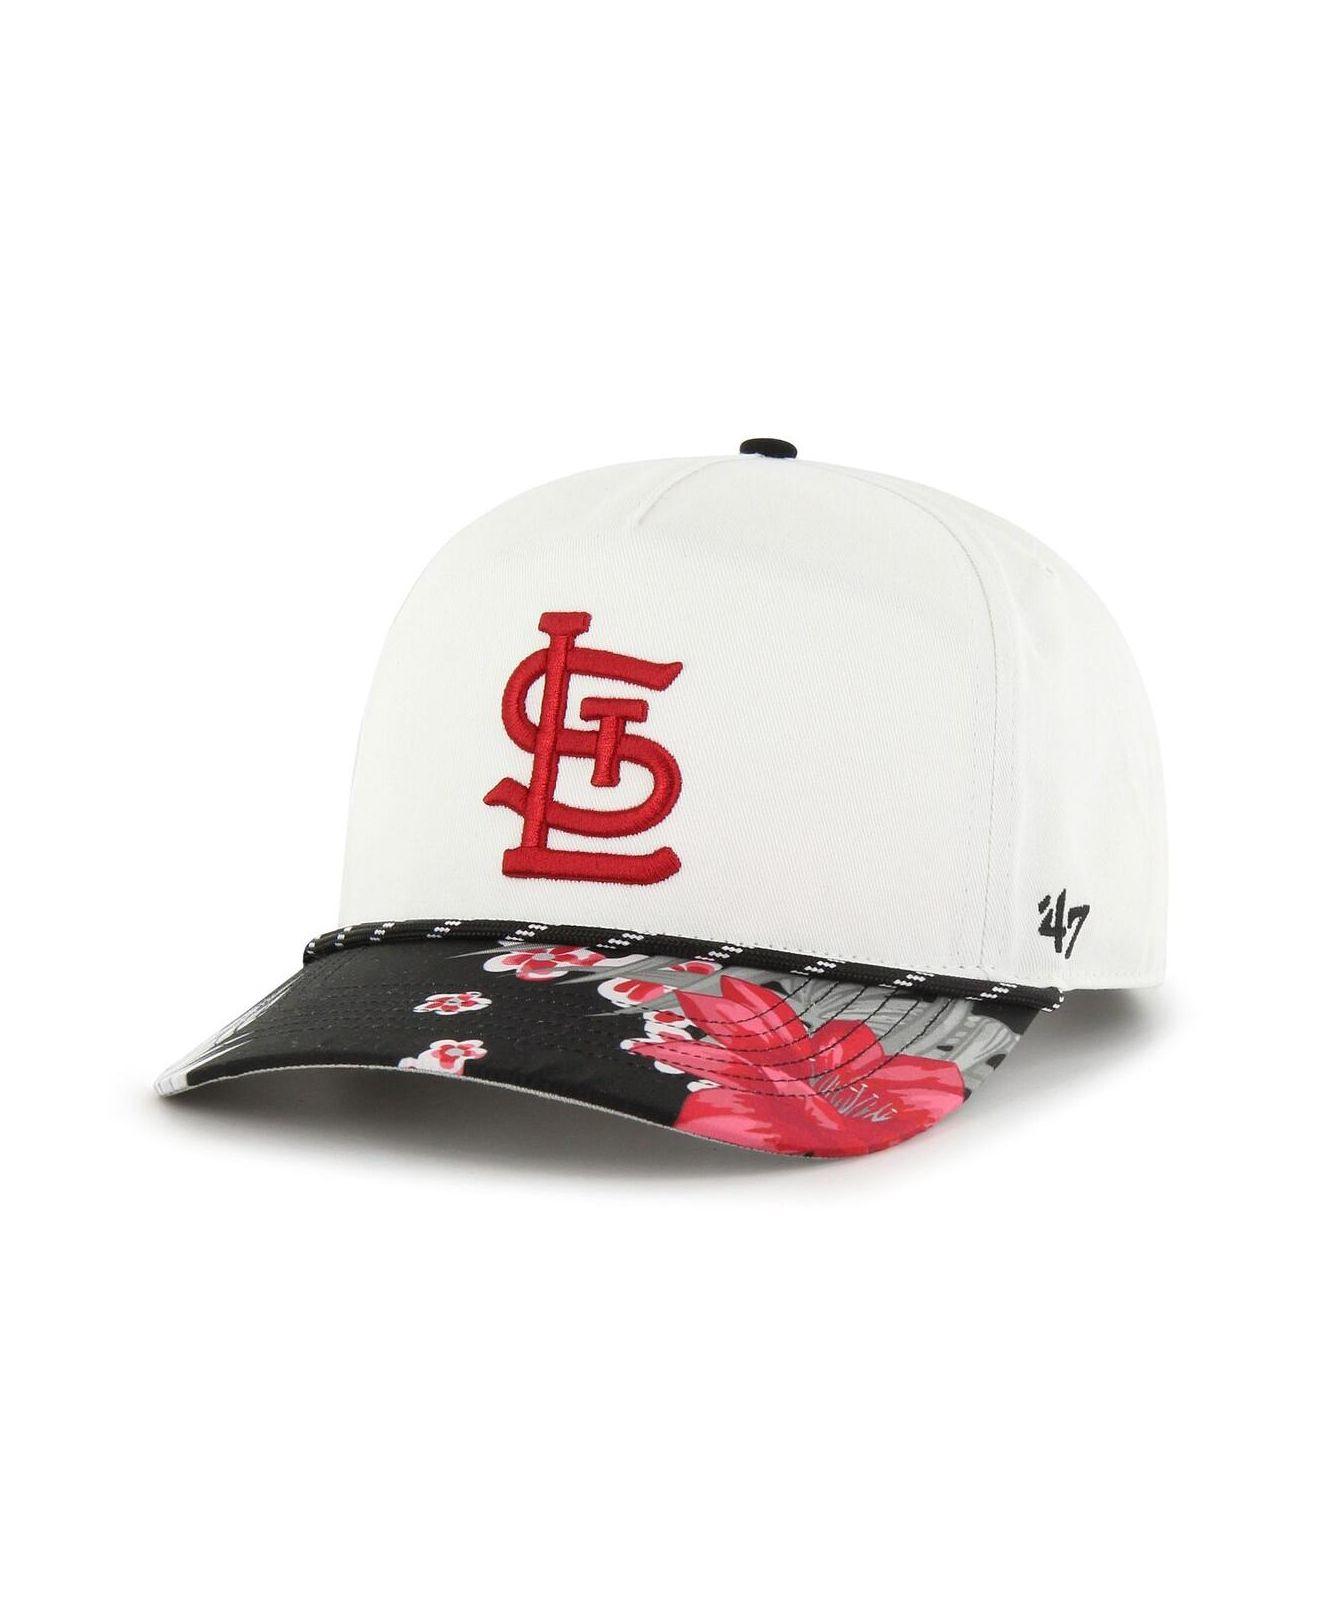 Lids St. Louis Cardinals '47 Team Clean Up Adjustable Hat - Camo